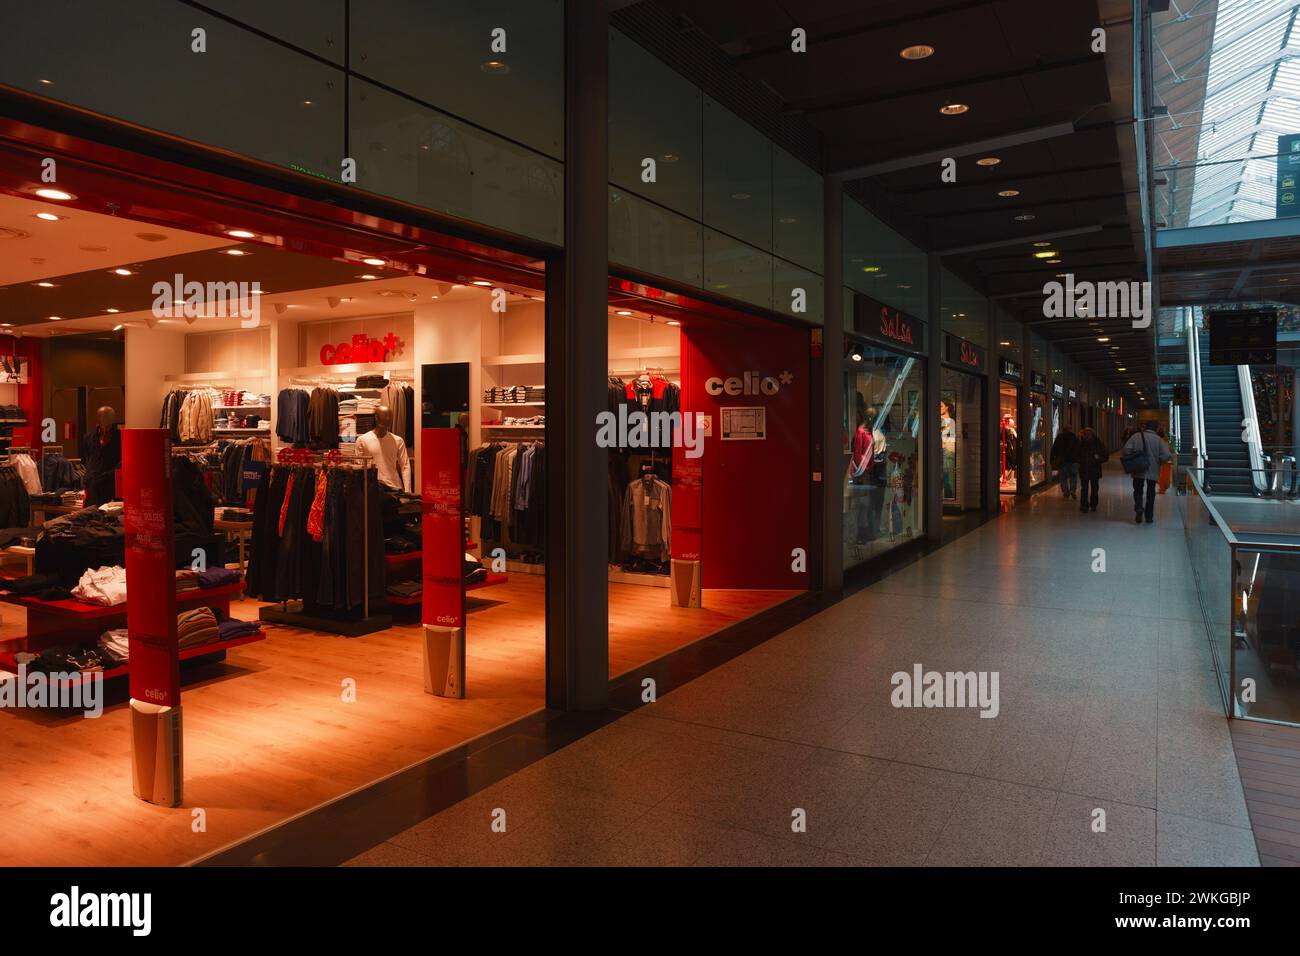 Celio Kleidergeschäft im Einkaufszentrum Gare St Lazare, Paris, Frankreich | modernes Bekleidungsgeschäft in einem Einkaufszentrum mit Glasfassade und Innenausstattung Stockfoto